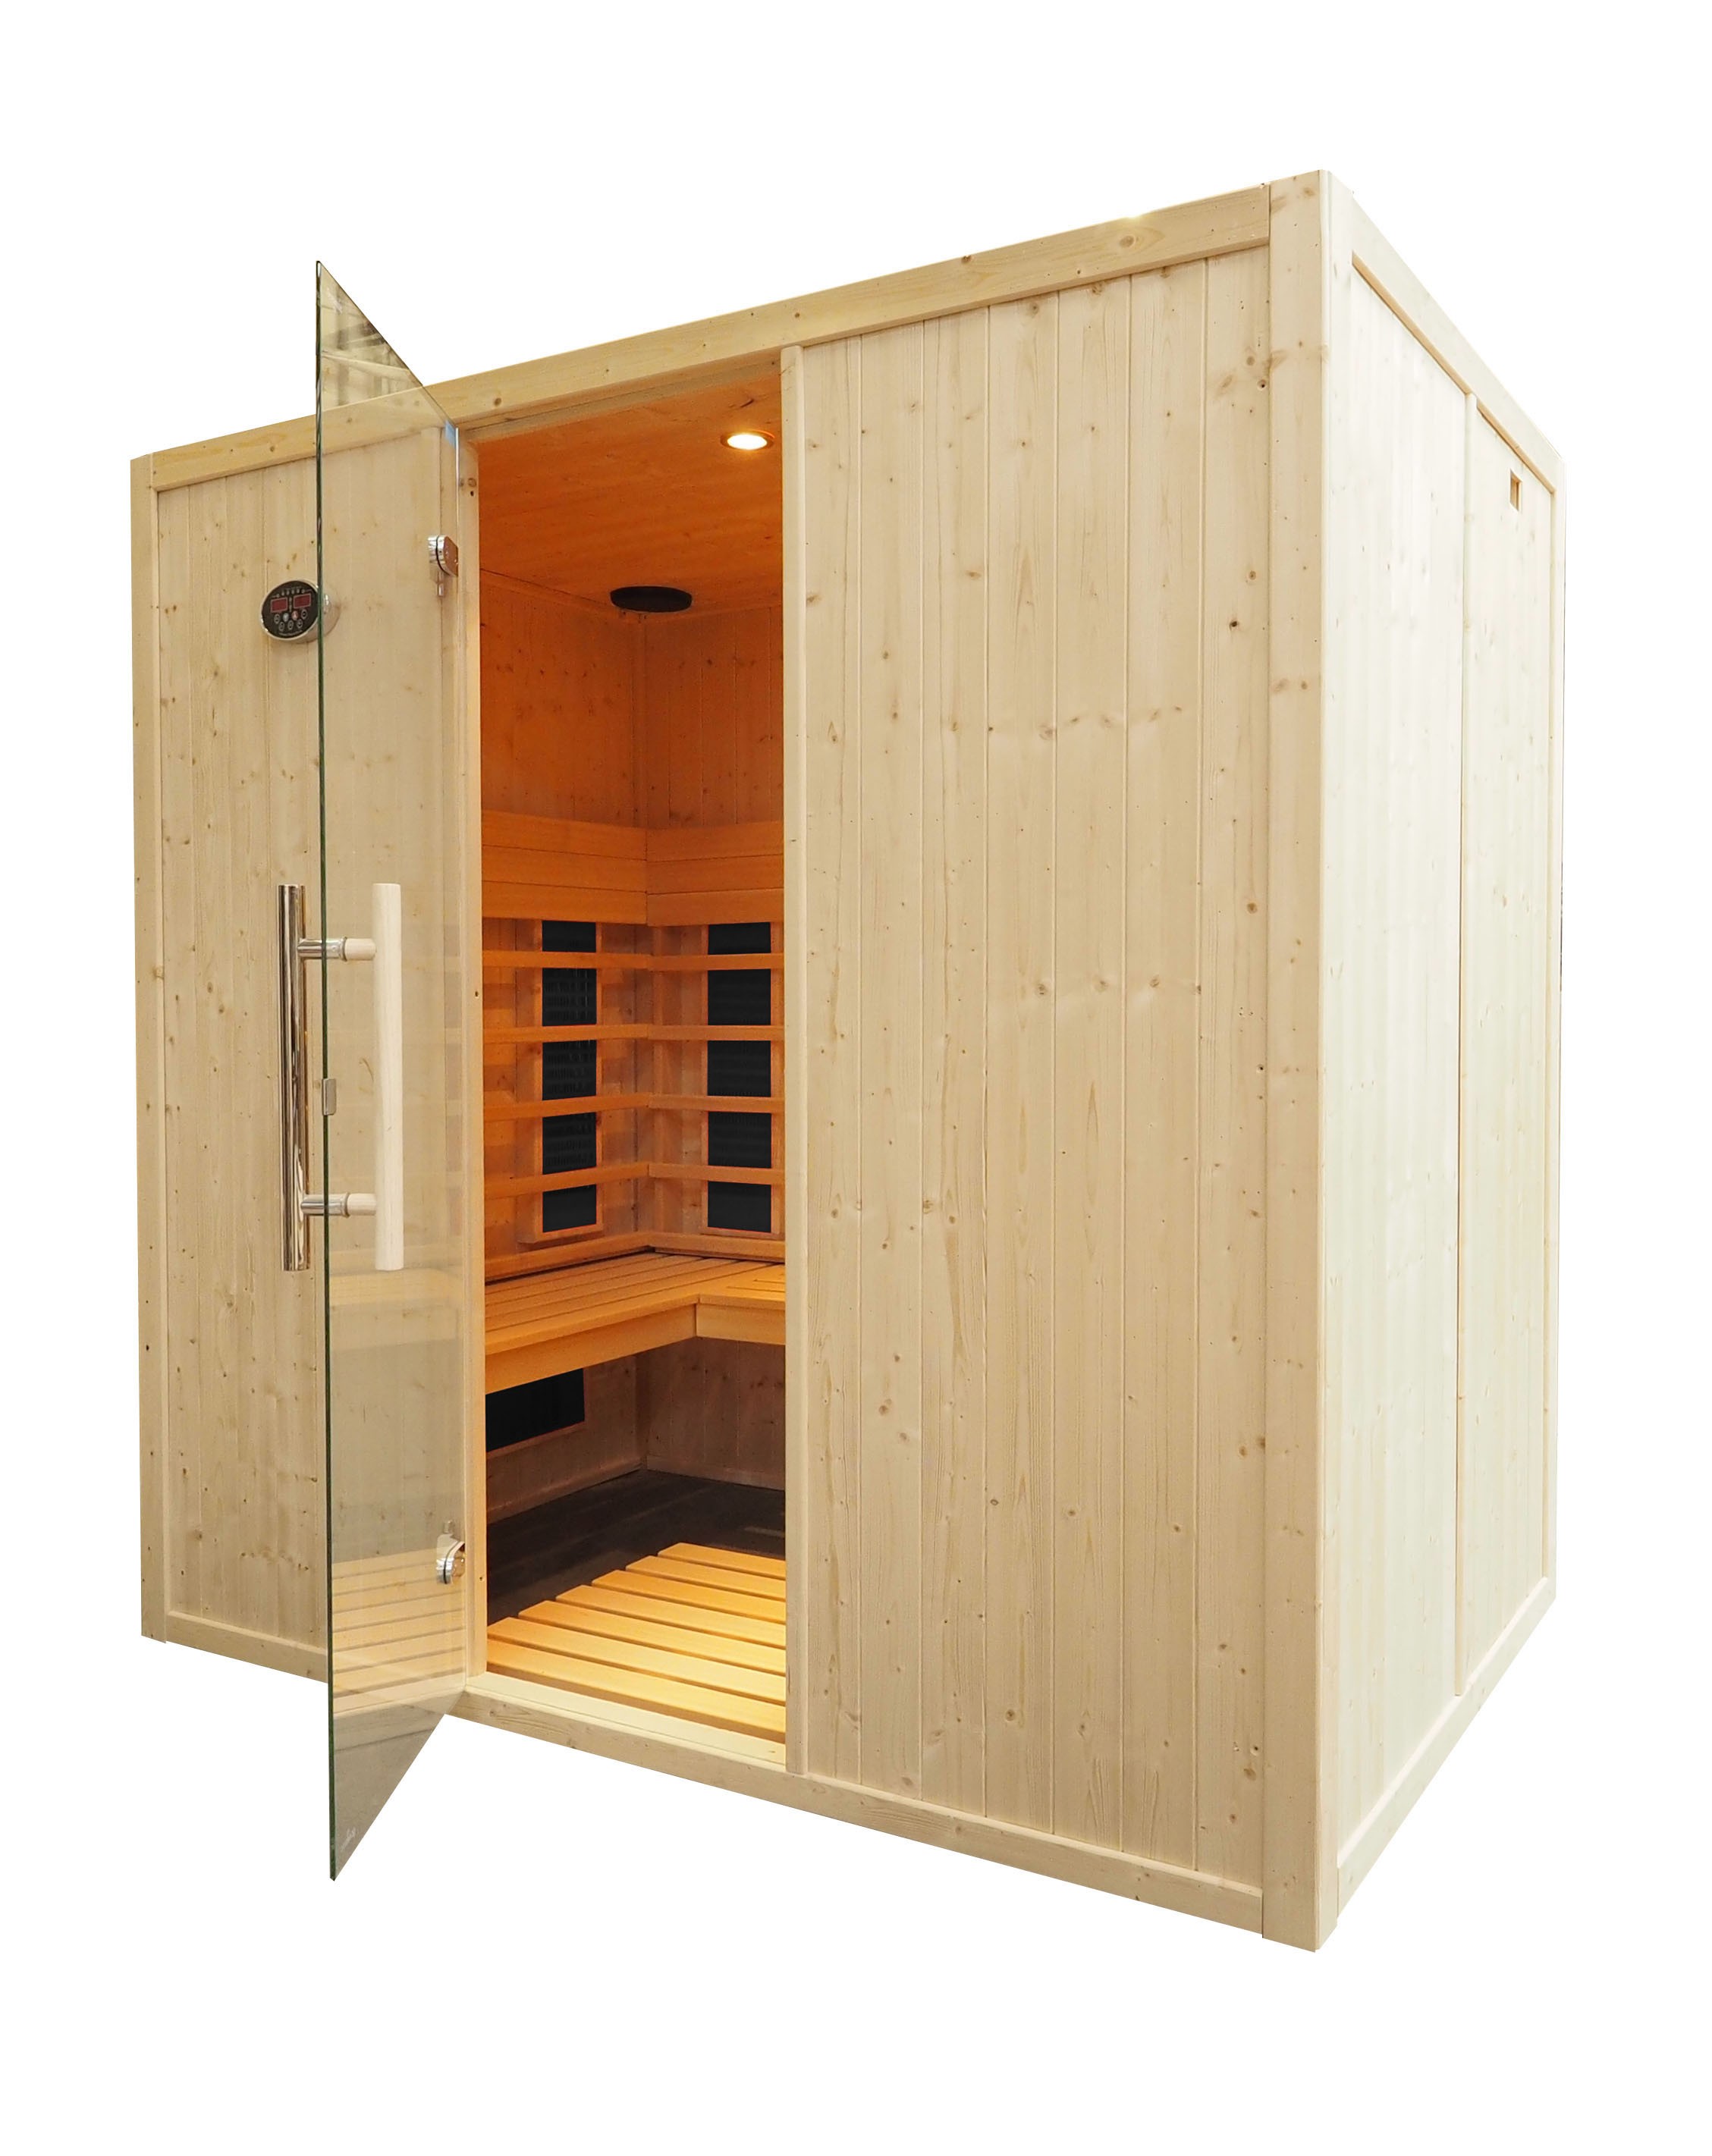 Cabina sauna de infravermelhos para 4 pessoas - IR2030L com bancos L